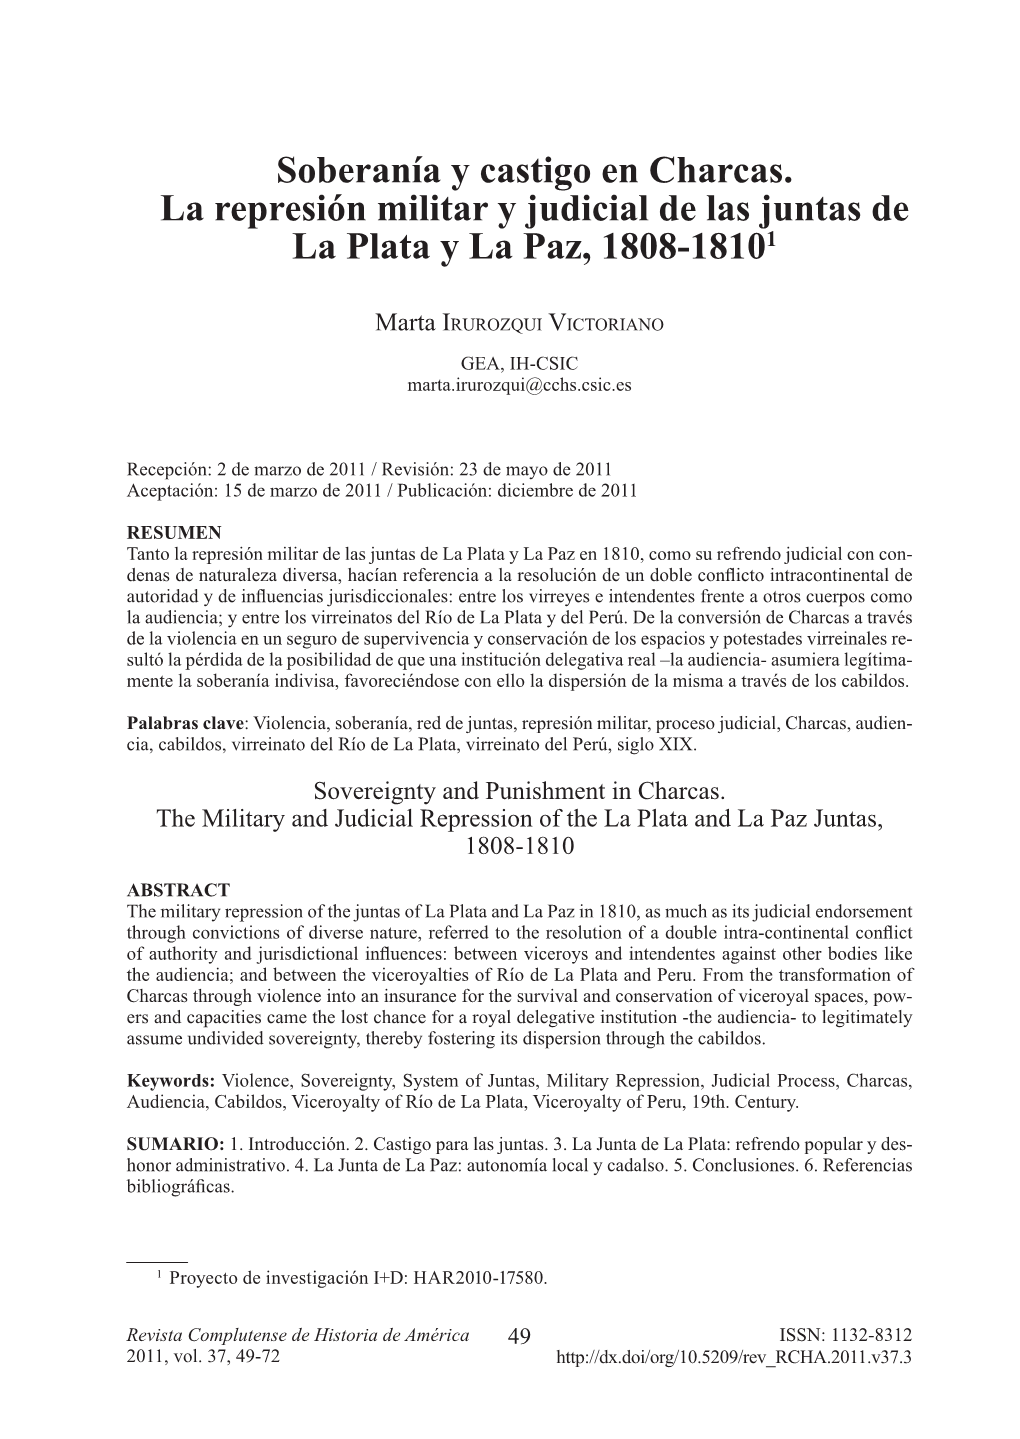 Soberanía Y Castigo En Charcas. La Represión Militar Y Judicial De Las Juntas De La Plata Y La Paz, 1808-18101